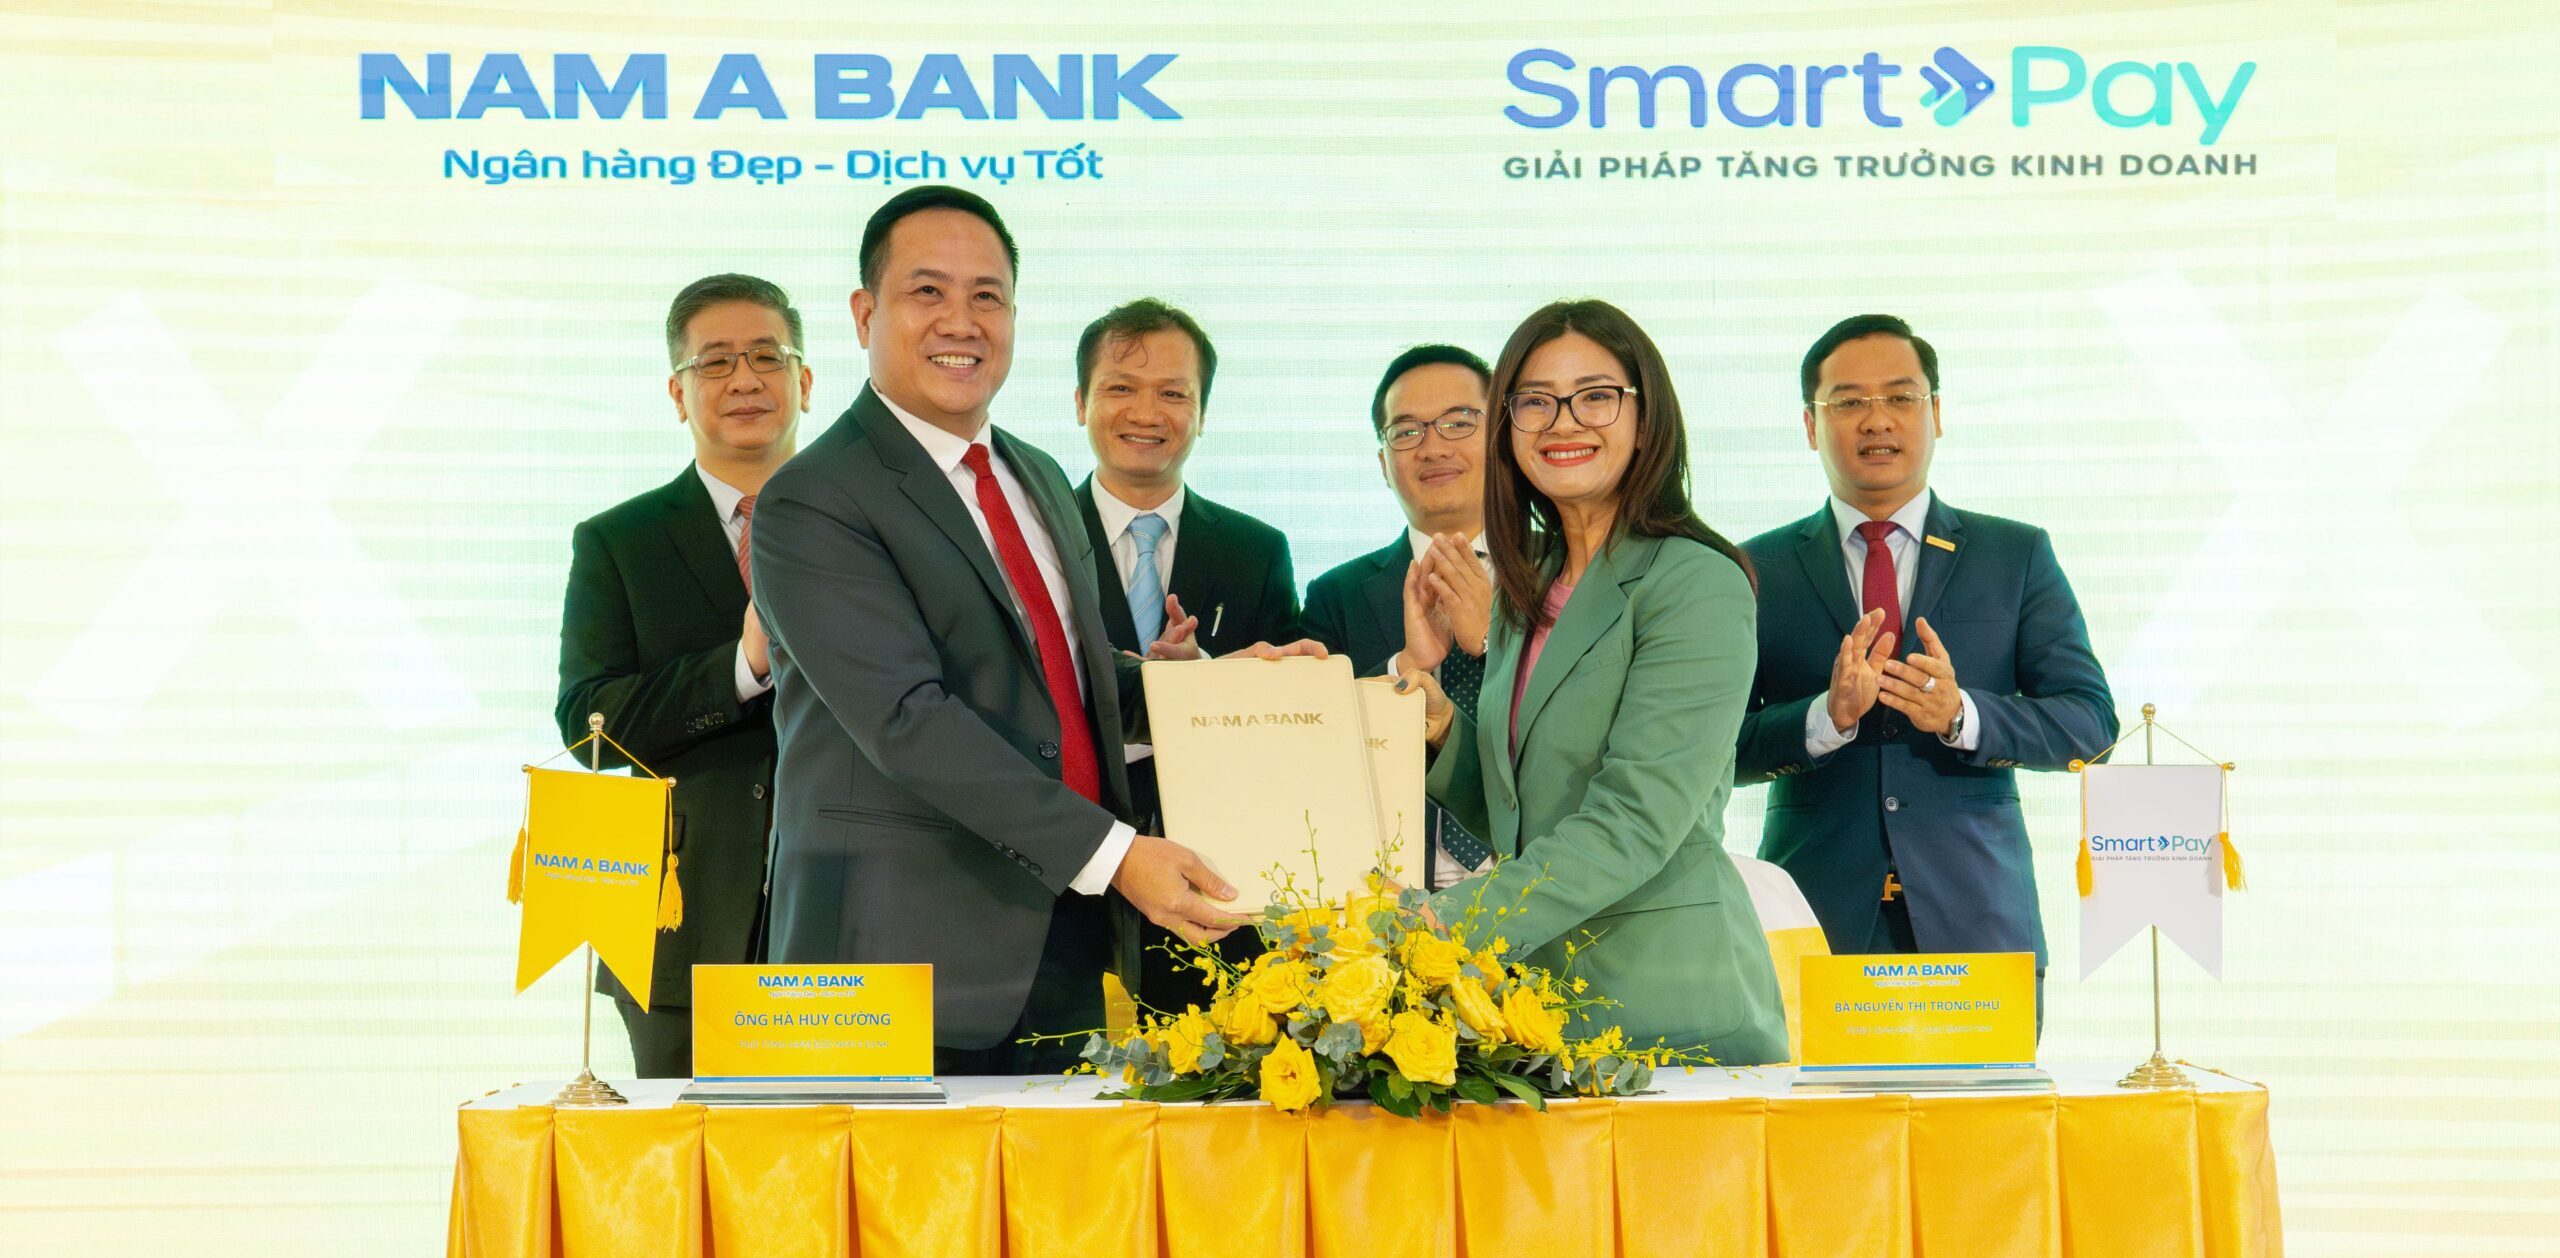 SmartPay “bắt tay” ngân hàng CIMB mở rộng dịch vụ ngân hàng điện tử